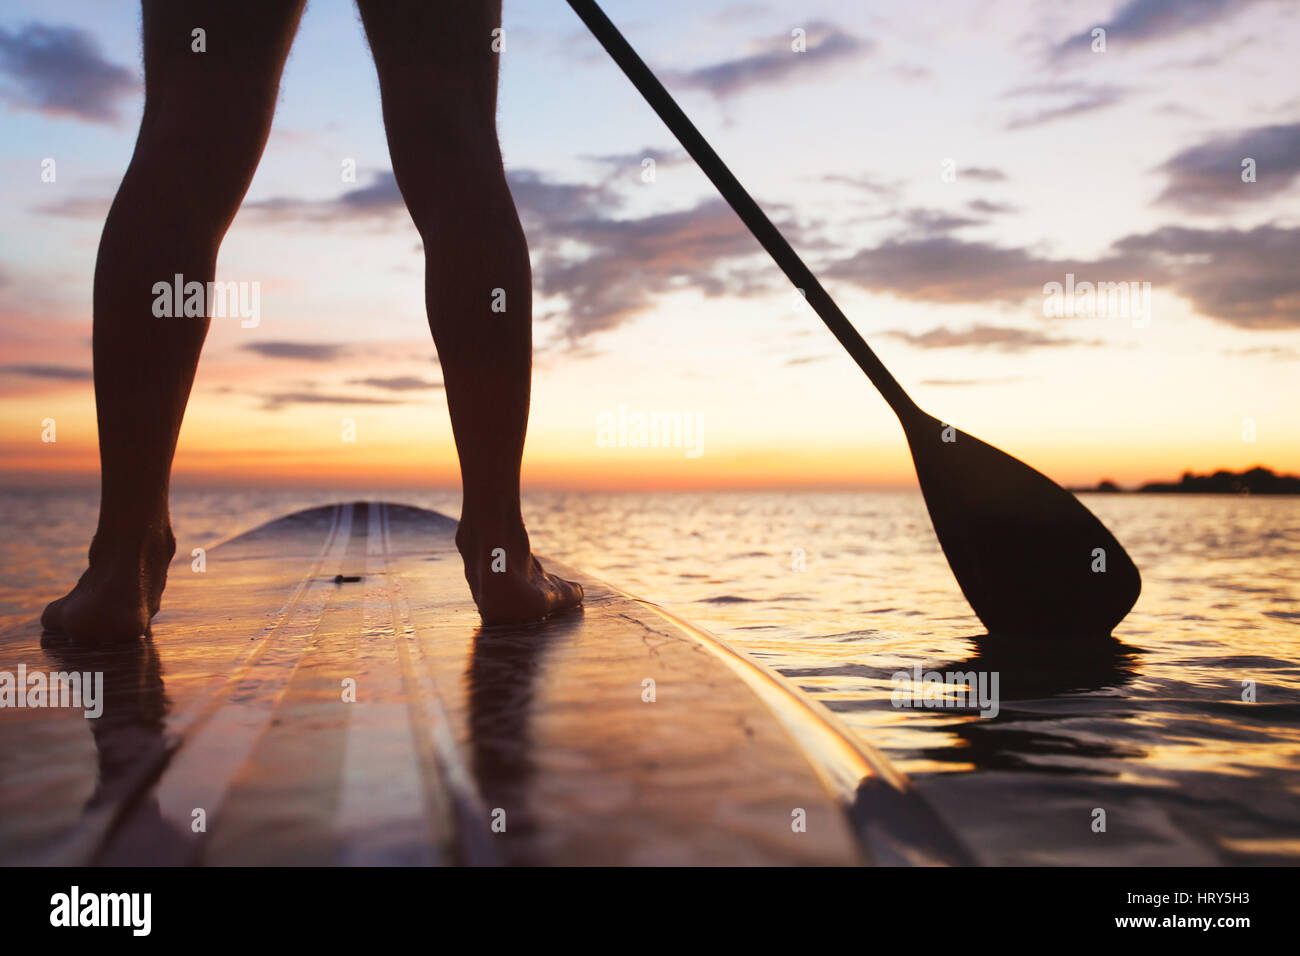 Paddle board sur la plage, près des jambes debout et palette Banque D'Images